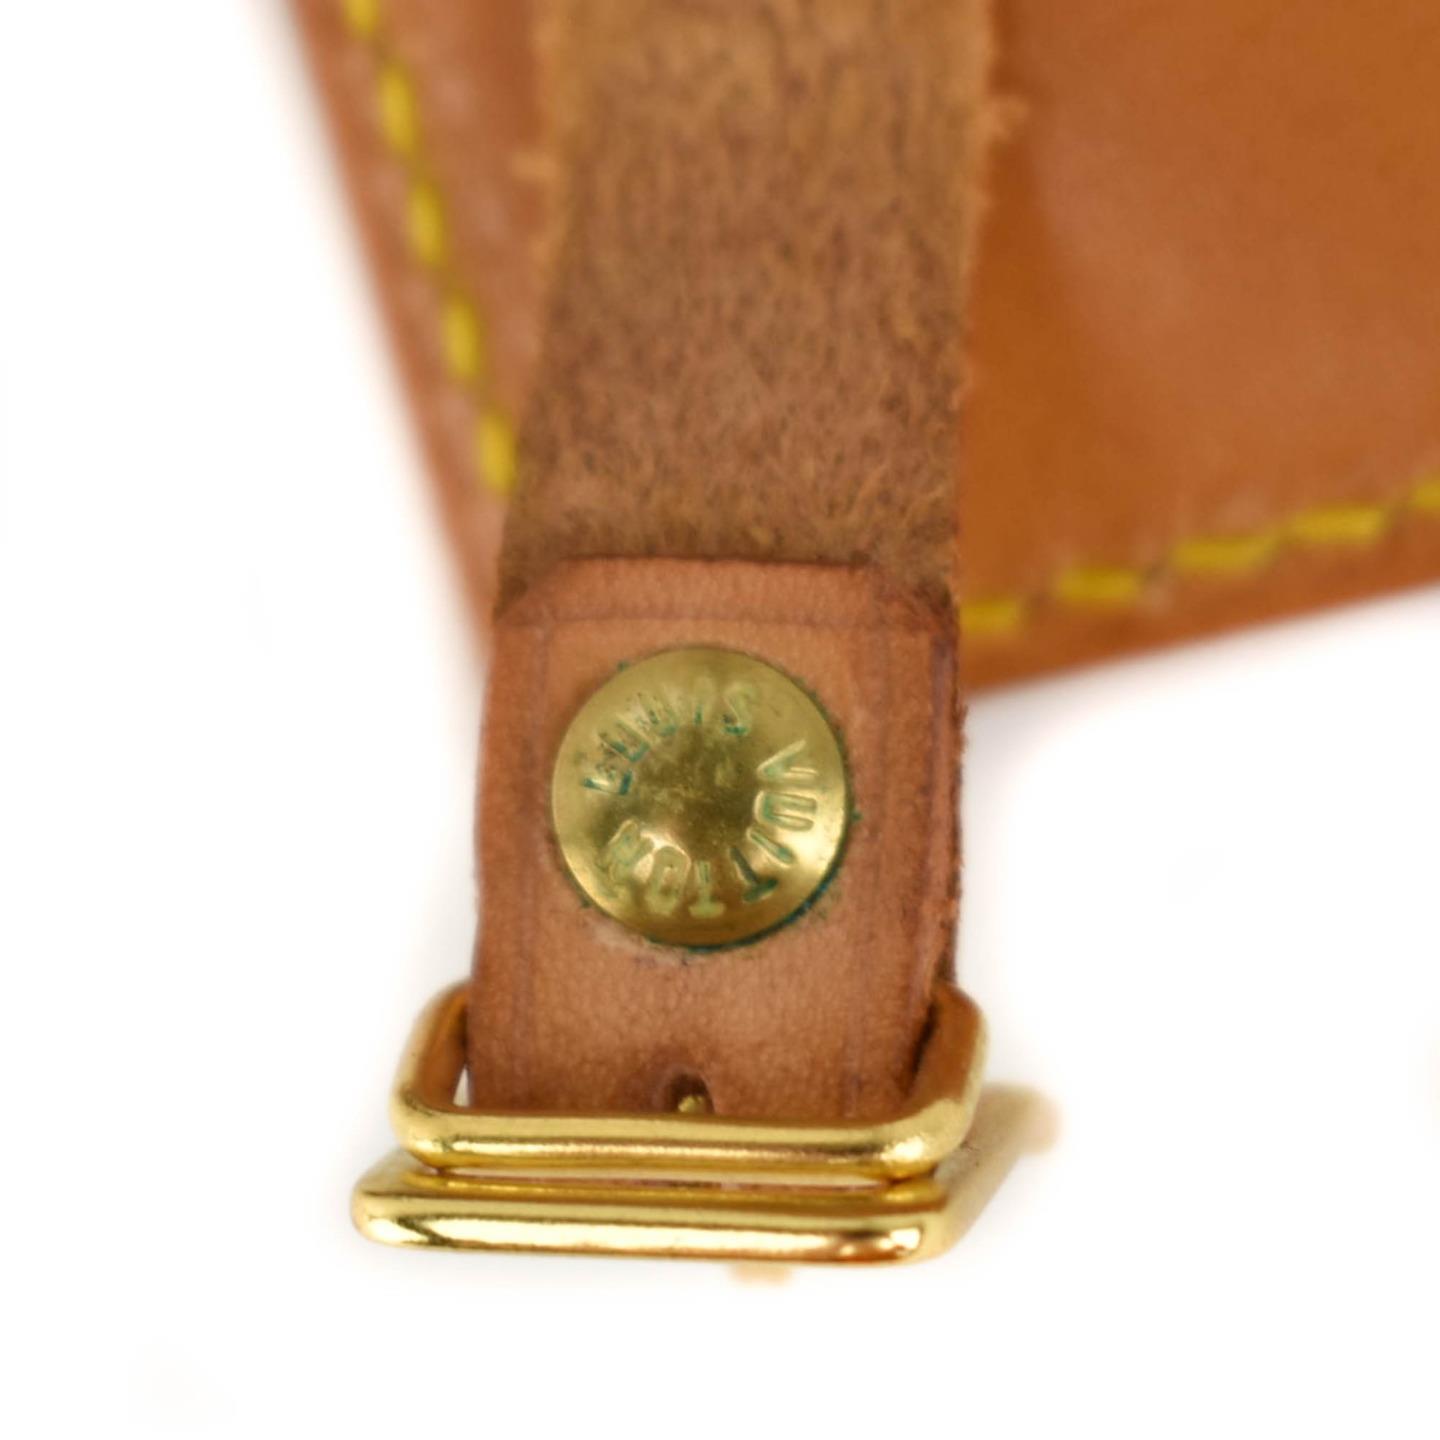 LOUIS VUITTON: Tan, Vachetta Leather Logo Luggage Tag & Keepall Set (px) | eBay